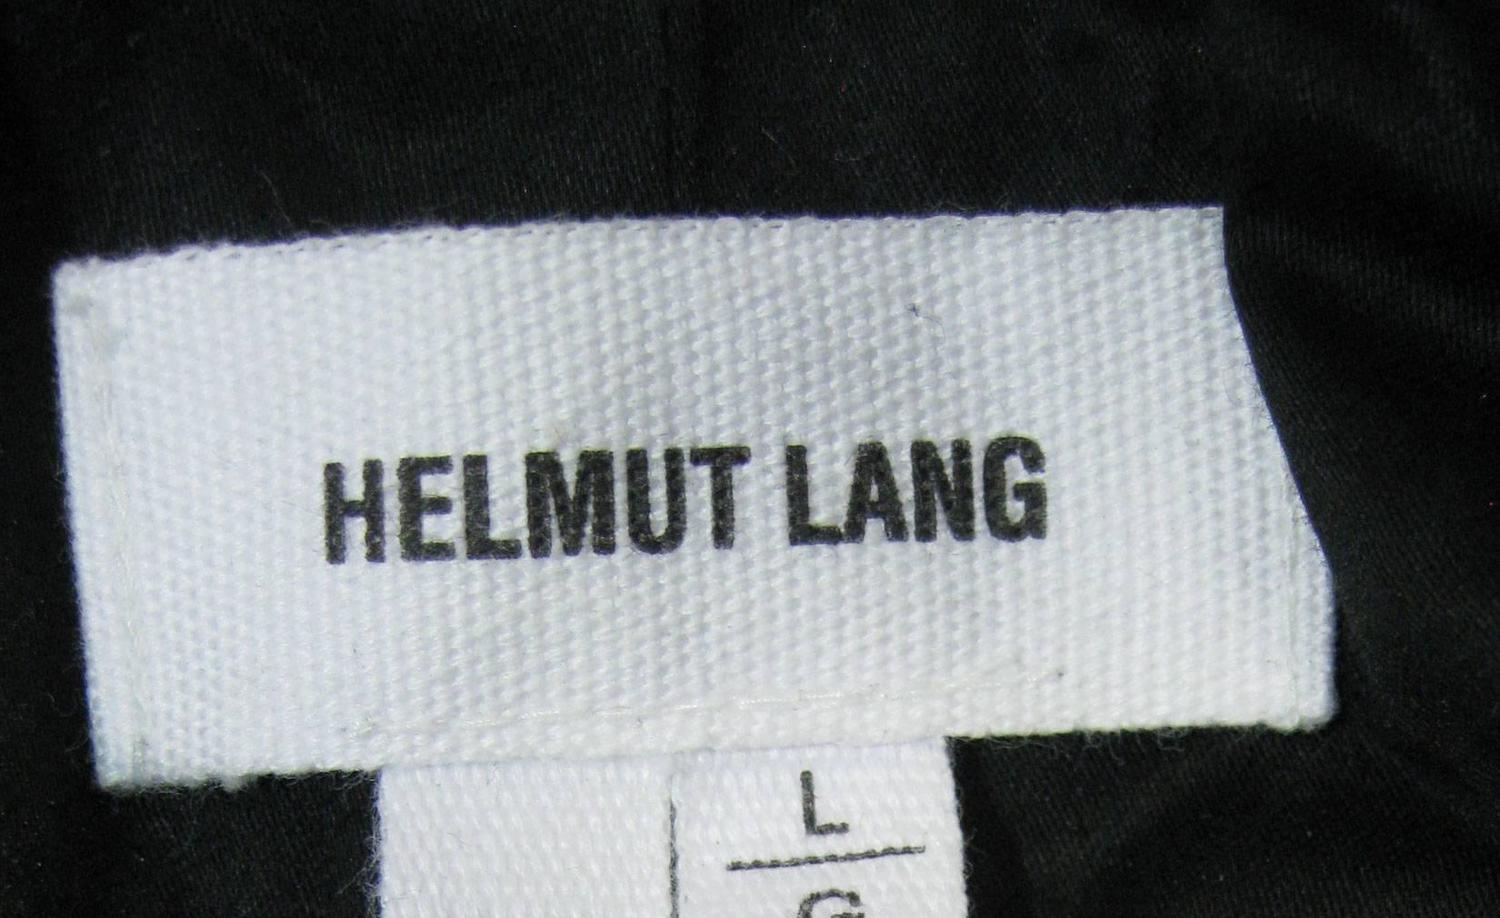 Helmut Lang Black Lambskin Leather Jacket For Sale at 1stdibs